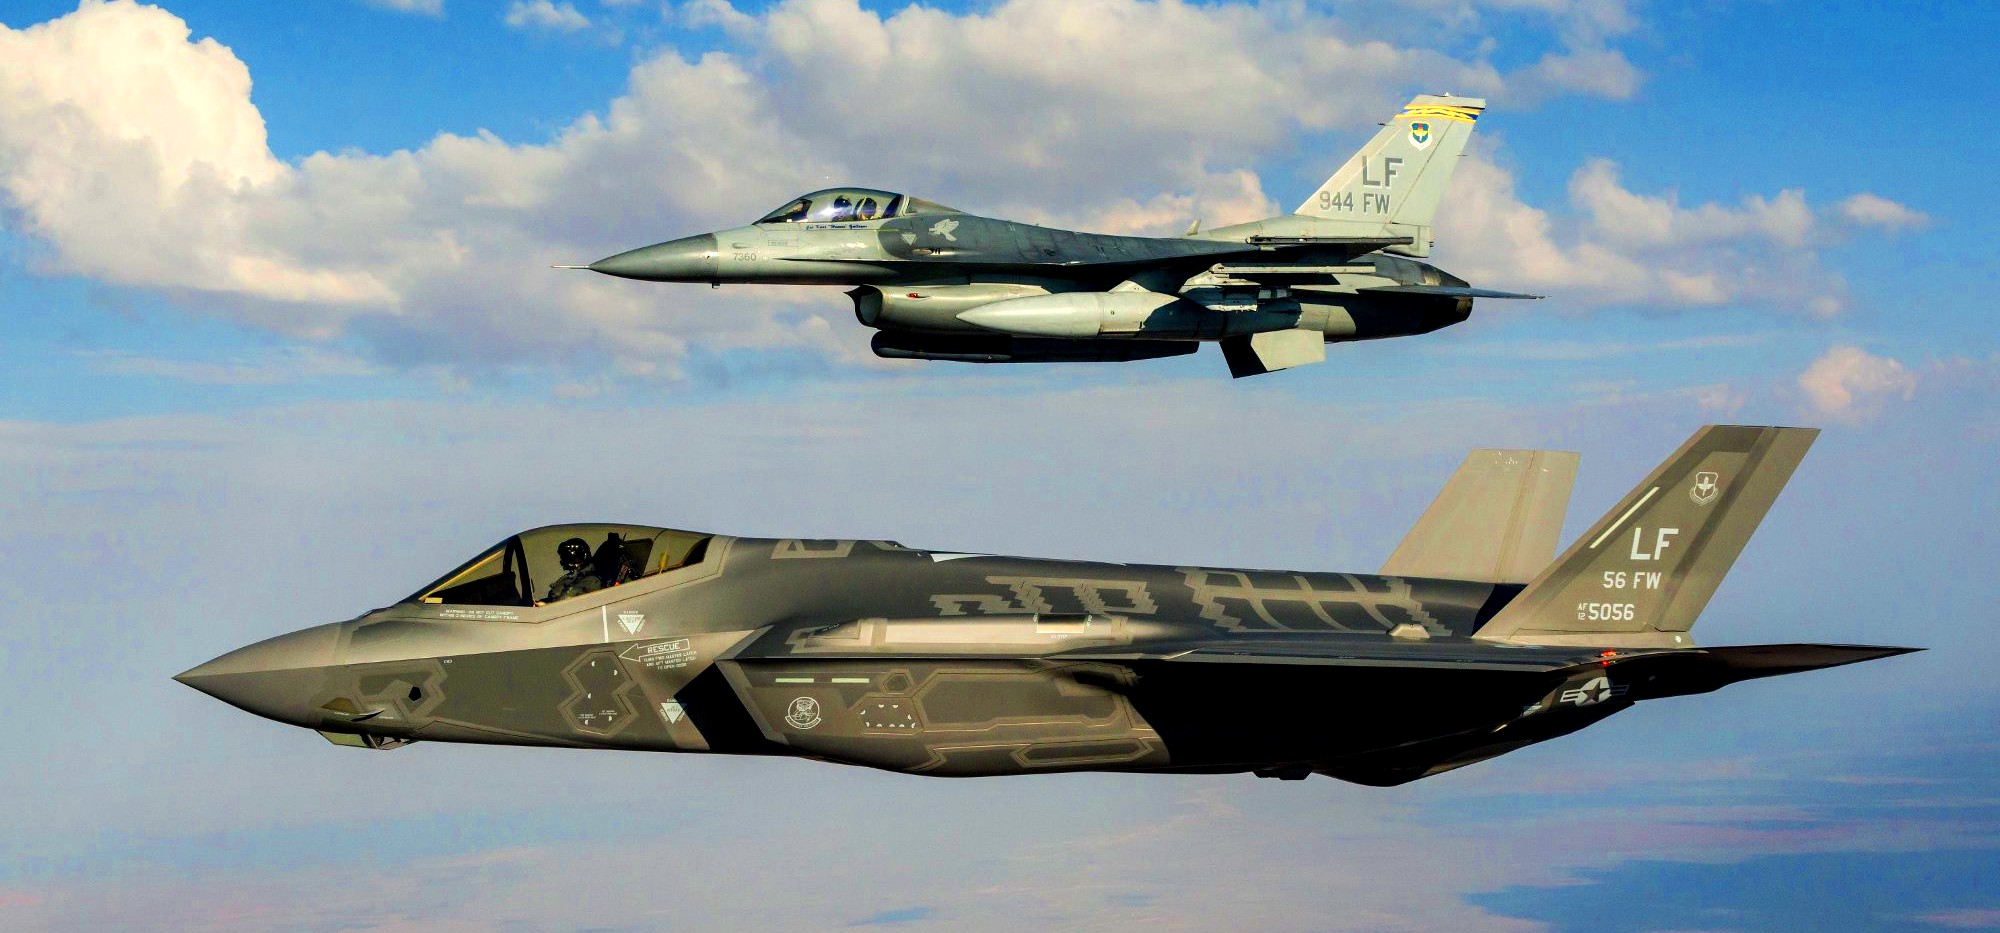 Αναβάθμιση παλαιών F-16 ή προμήθεια stealth F-35; – Η απάντηση θα κρίνει την ακεραιότητα της χώρας